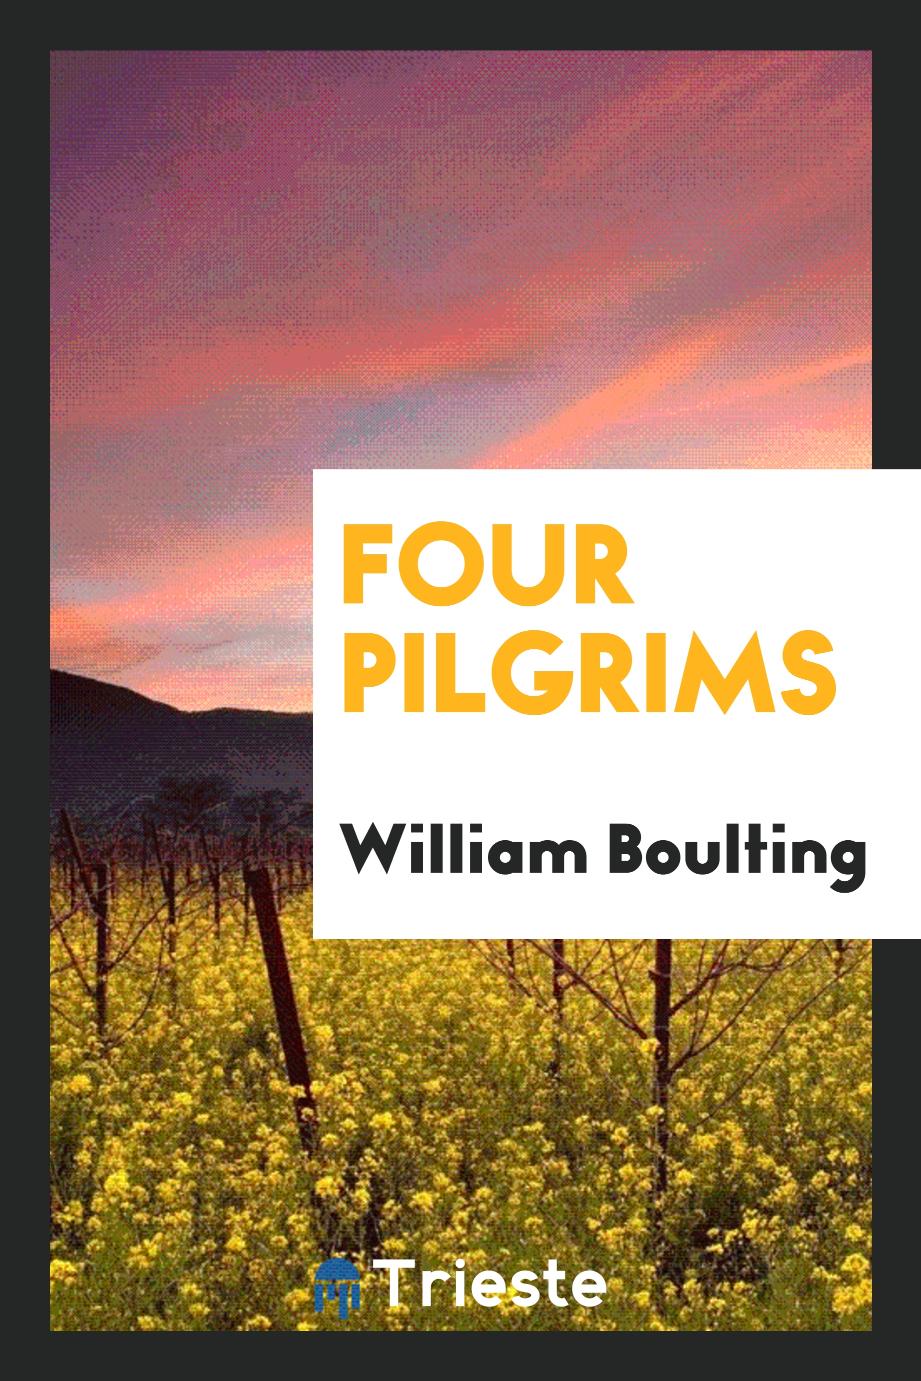 Four pilgrims